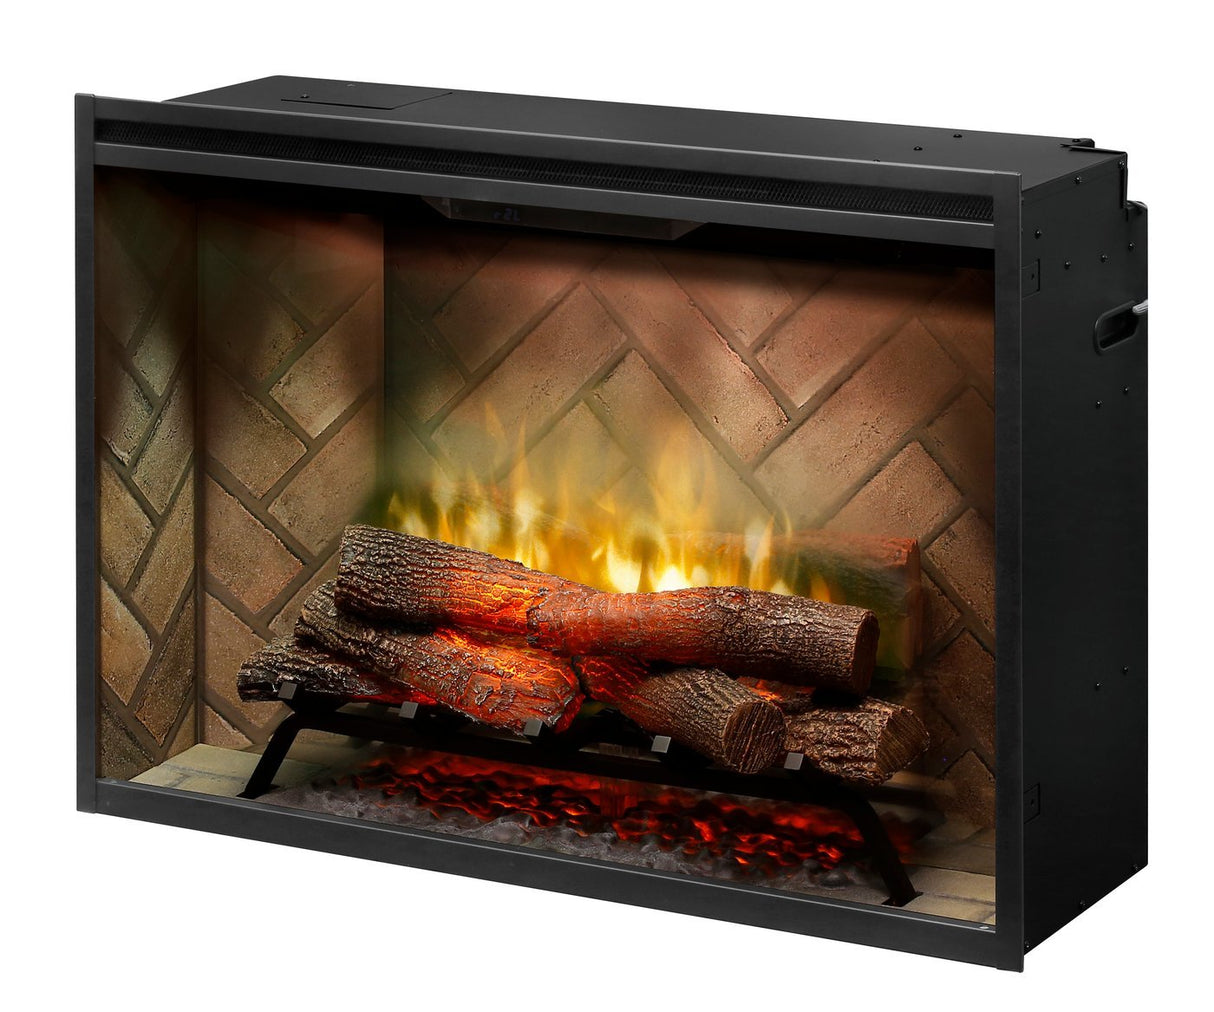 Dimplex Revillusion 36-Inch Built-In Electric Fireplace Insert Firebox - Herringbone Brick